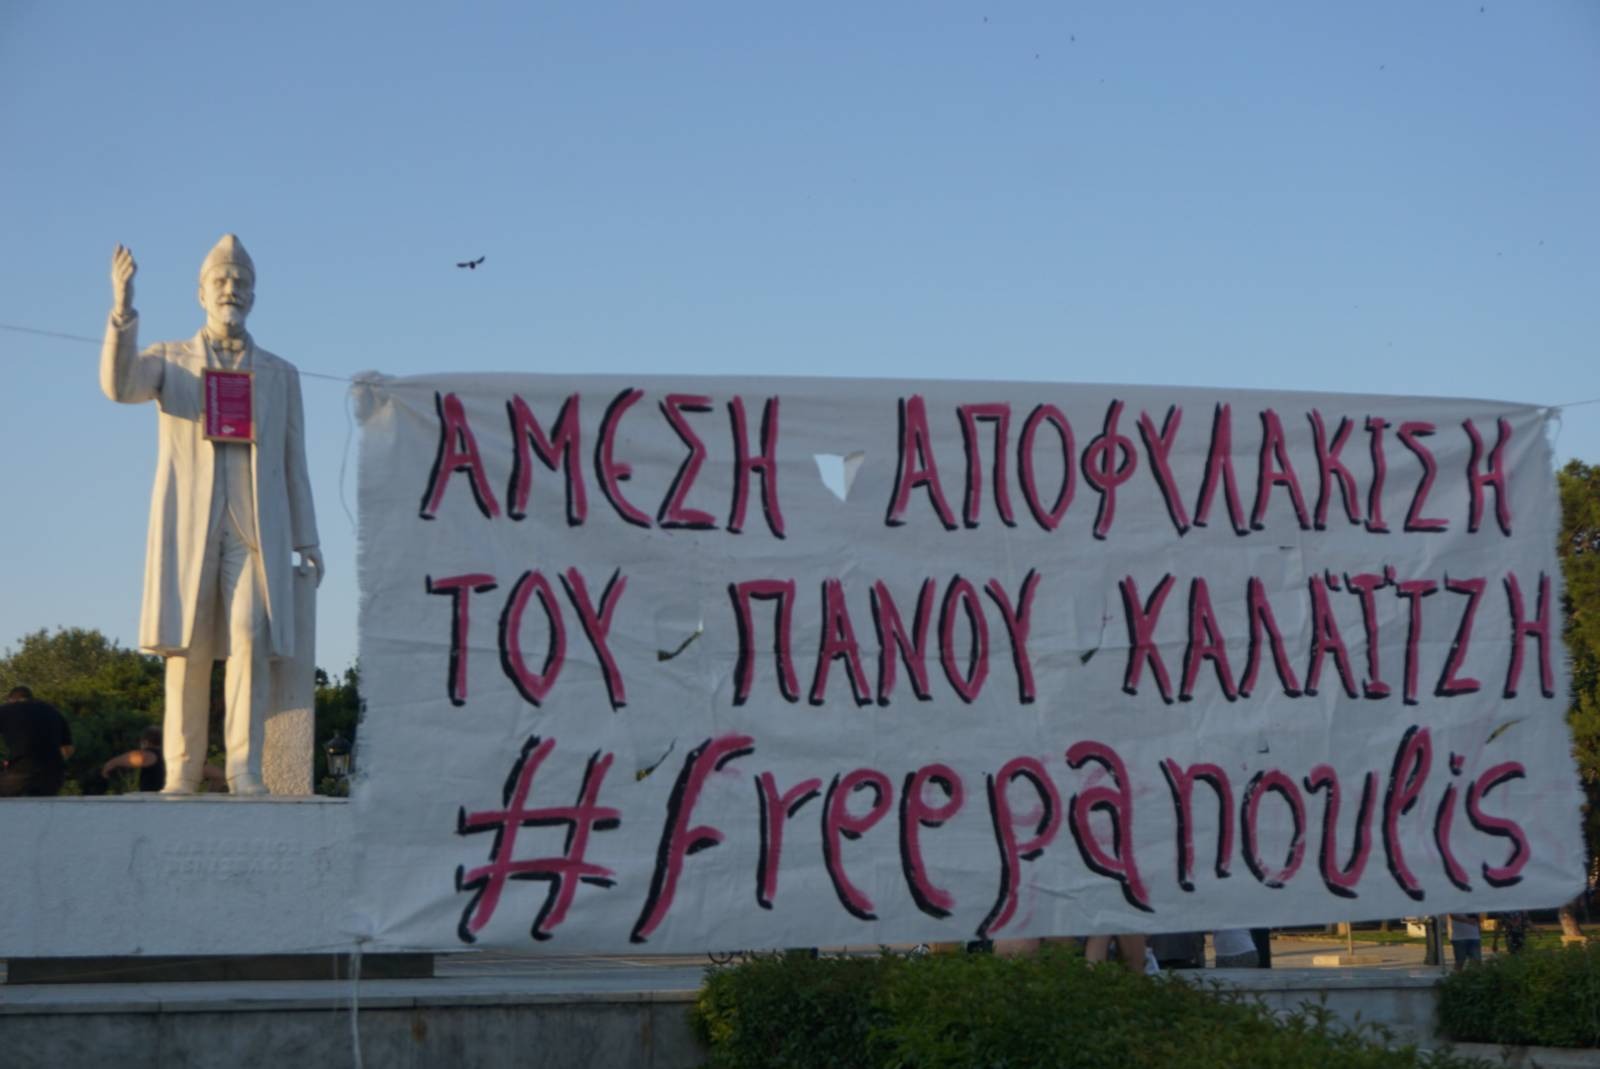 Συγκέντρωση στα δικαστήρια Θεσσαλονίκης για την απελευθέρωση του Πάνου Καλαϊτζή